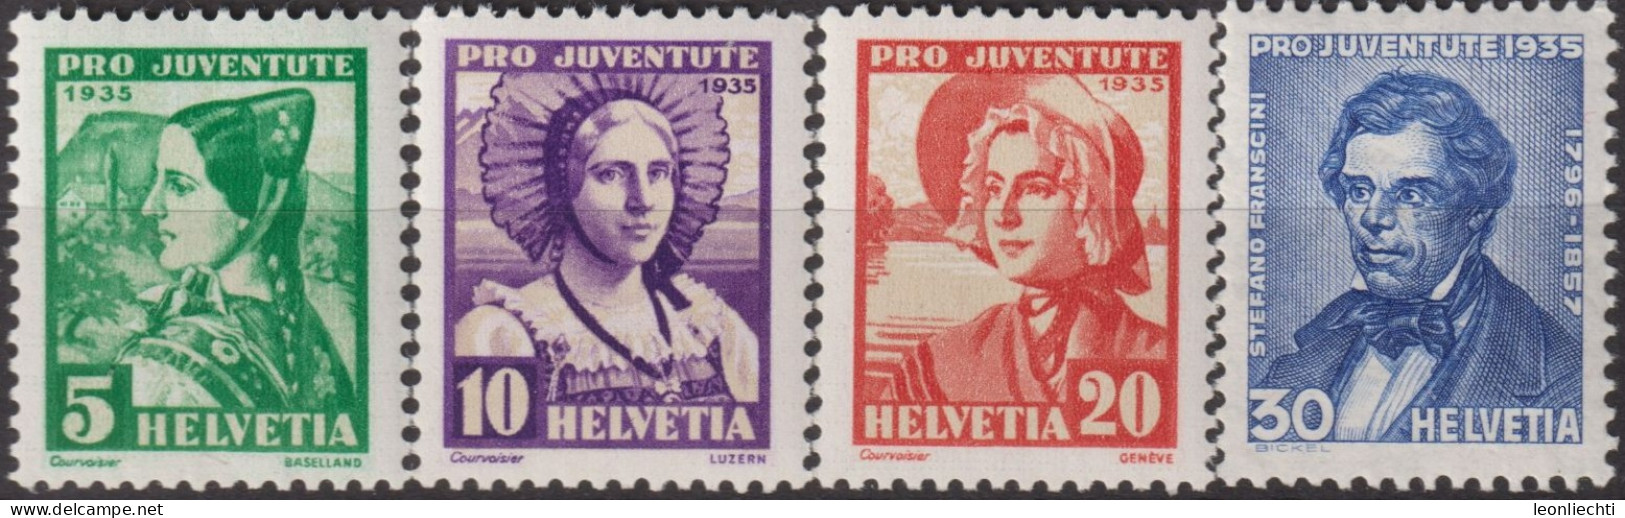 1935 Schweiz / Pro Juventute ** Zum:CH J73-J76, Mi:CH 287-290, Yt:CH 282-285, Frauentrachten, Stefano Franscini - Nuevos